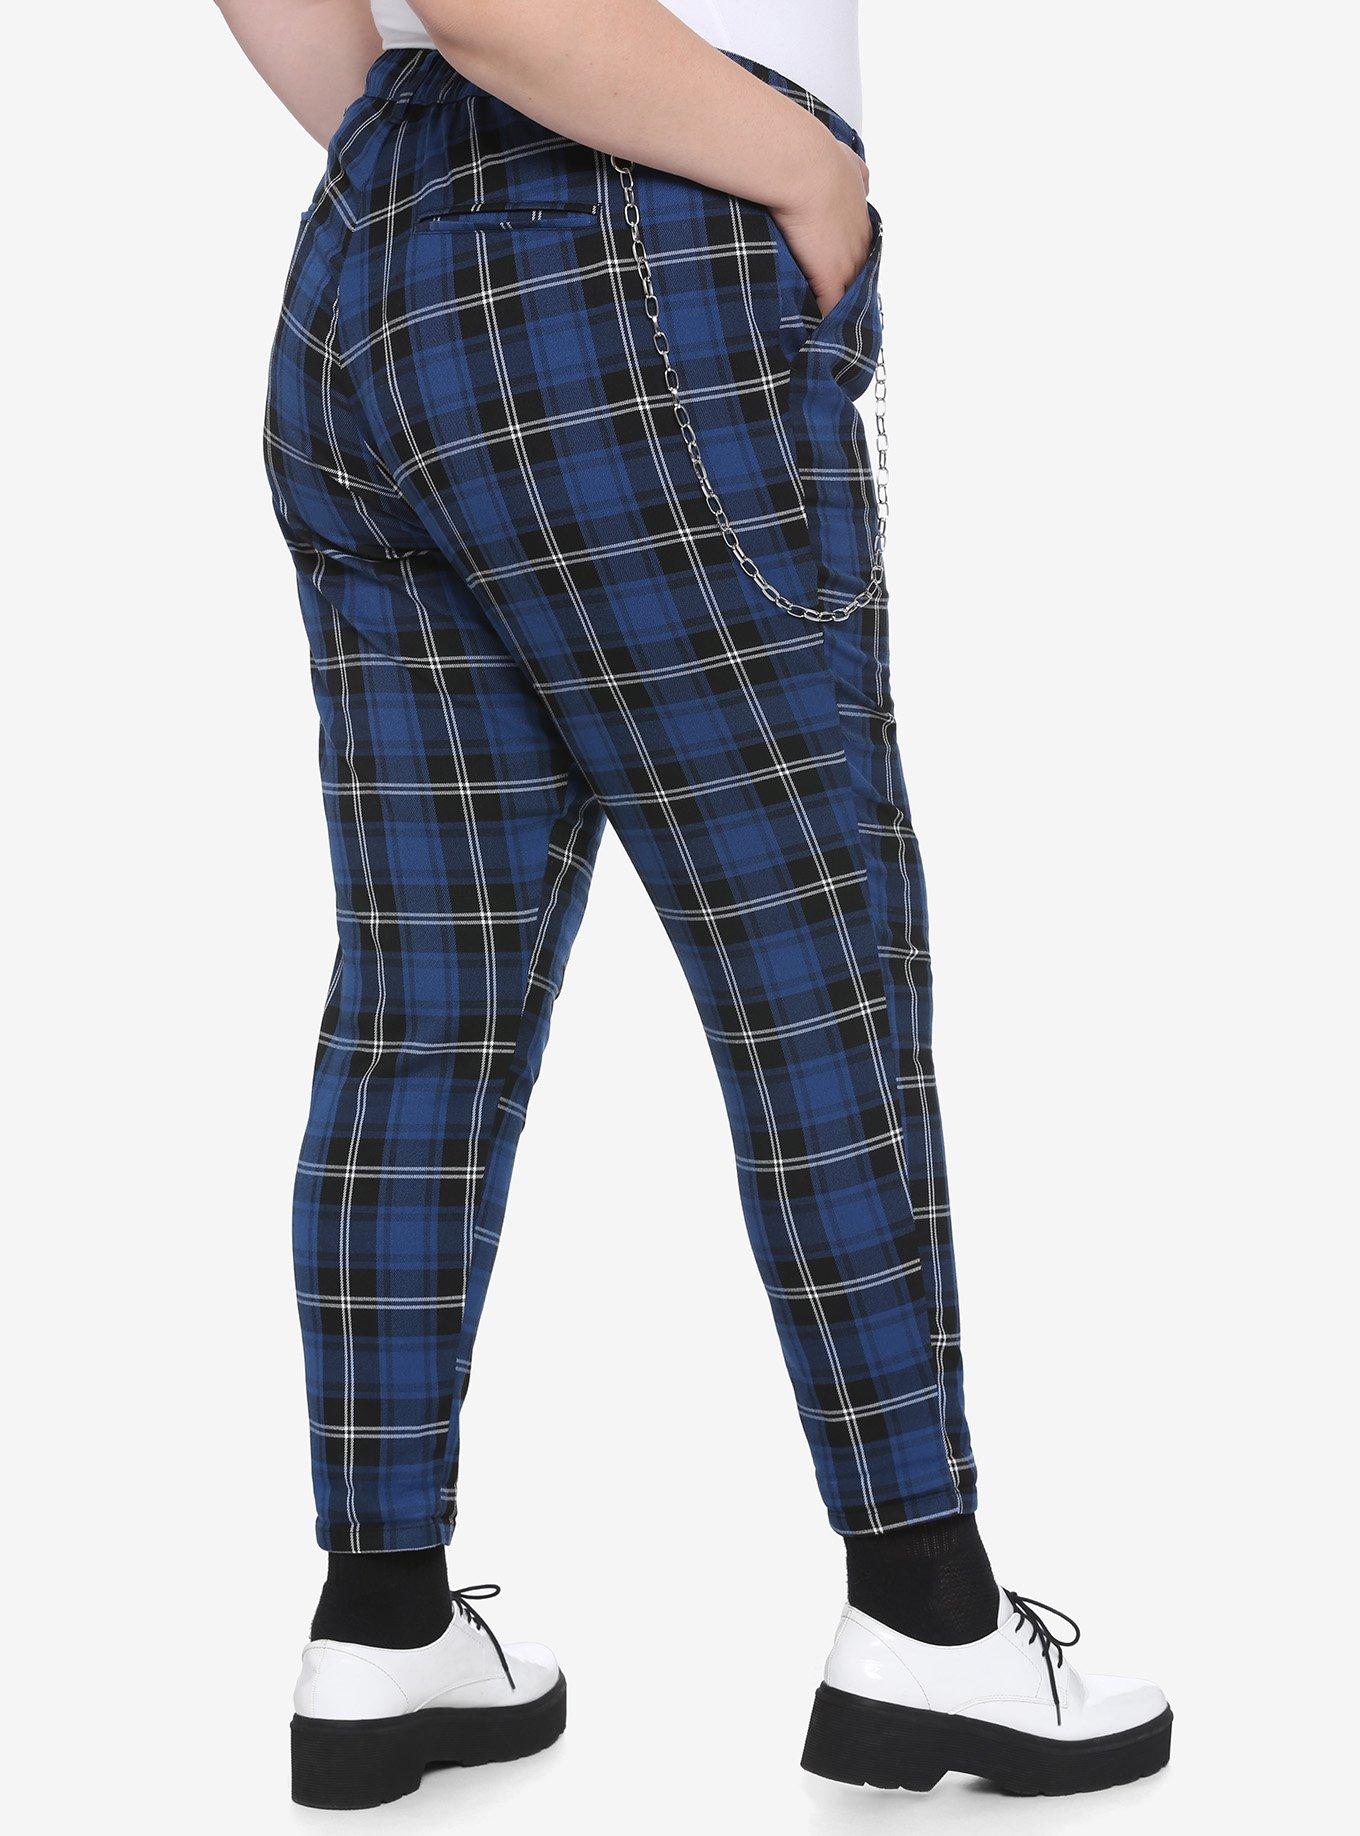 Blue Plaid Pants With Detachable Chain Plus Size